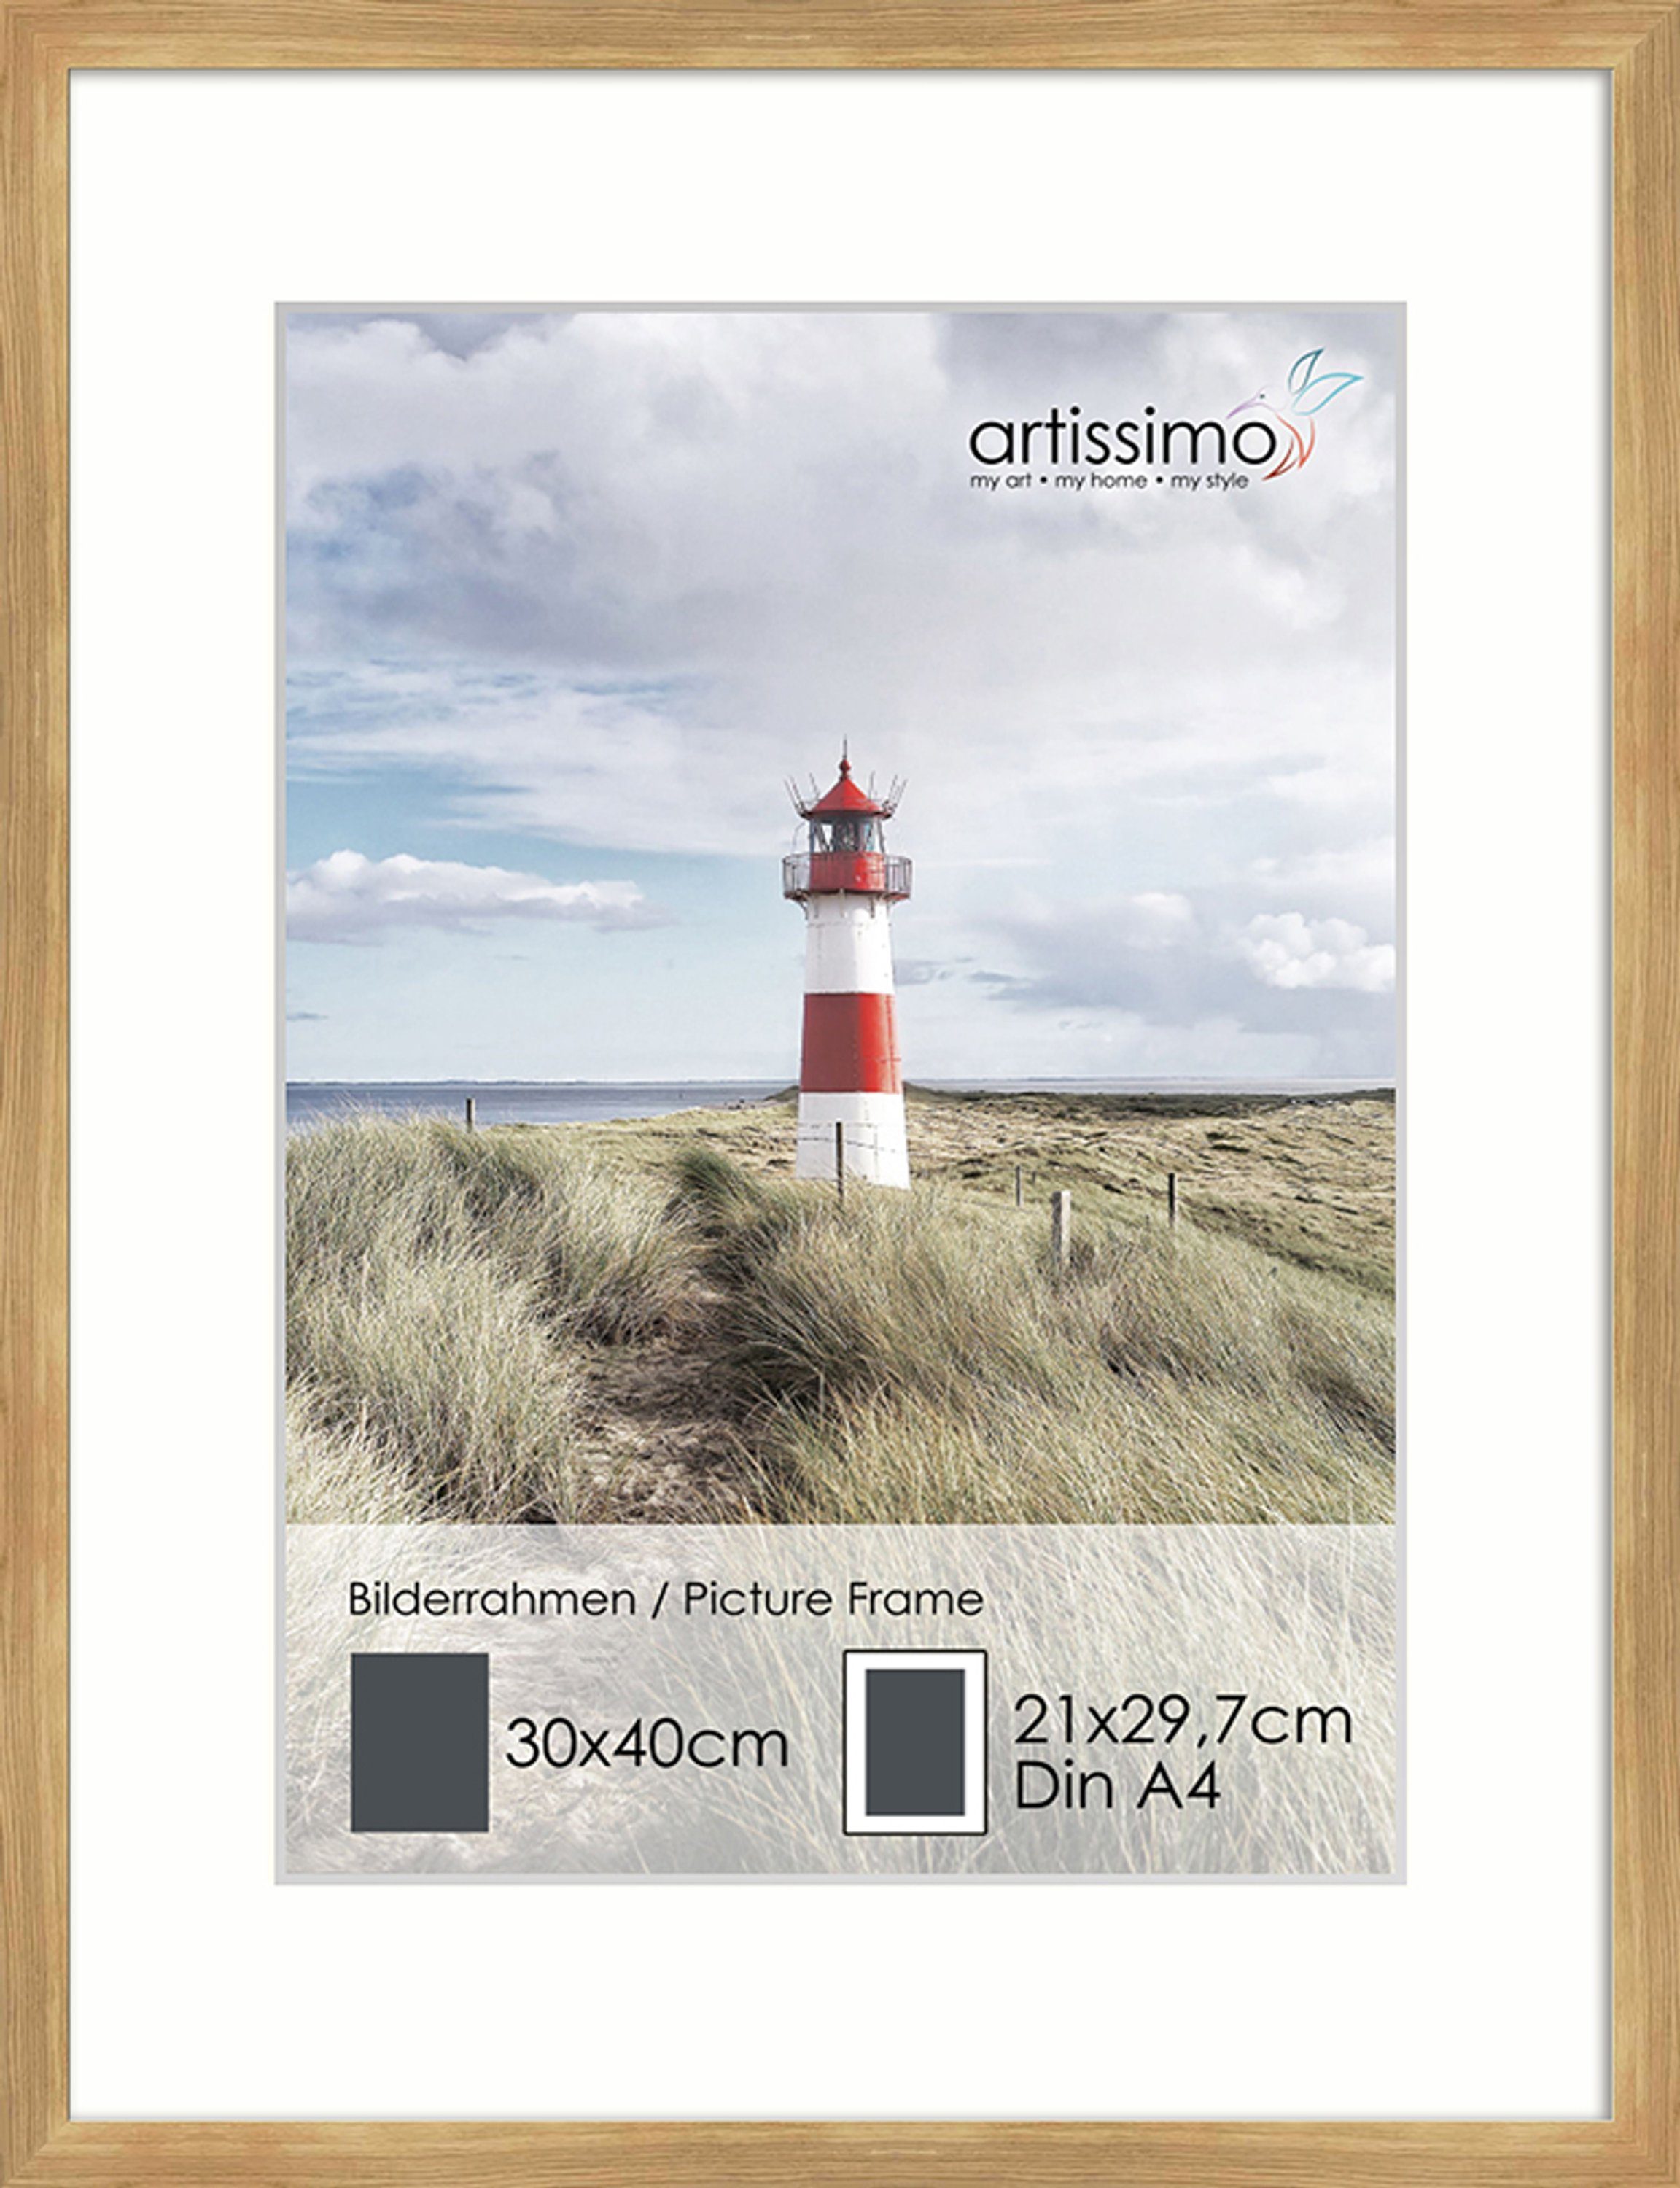 Passepartout inkl. Poster Bilderleiste DinA4 für Eiche Bilder-Rahmen 30x40cm Holz artissimo